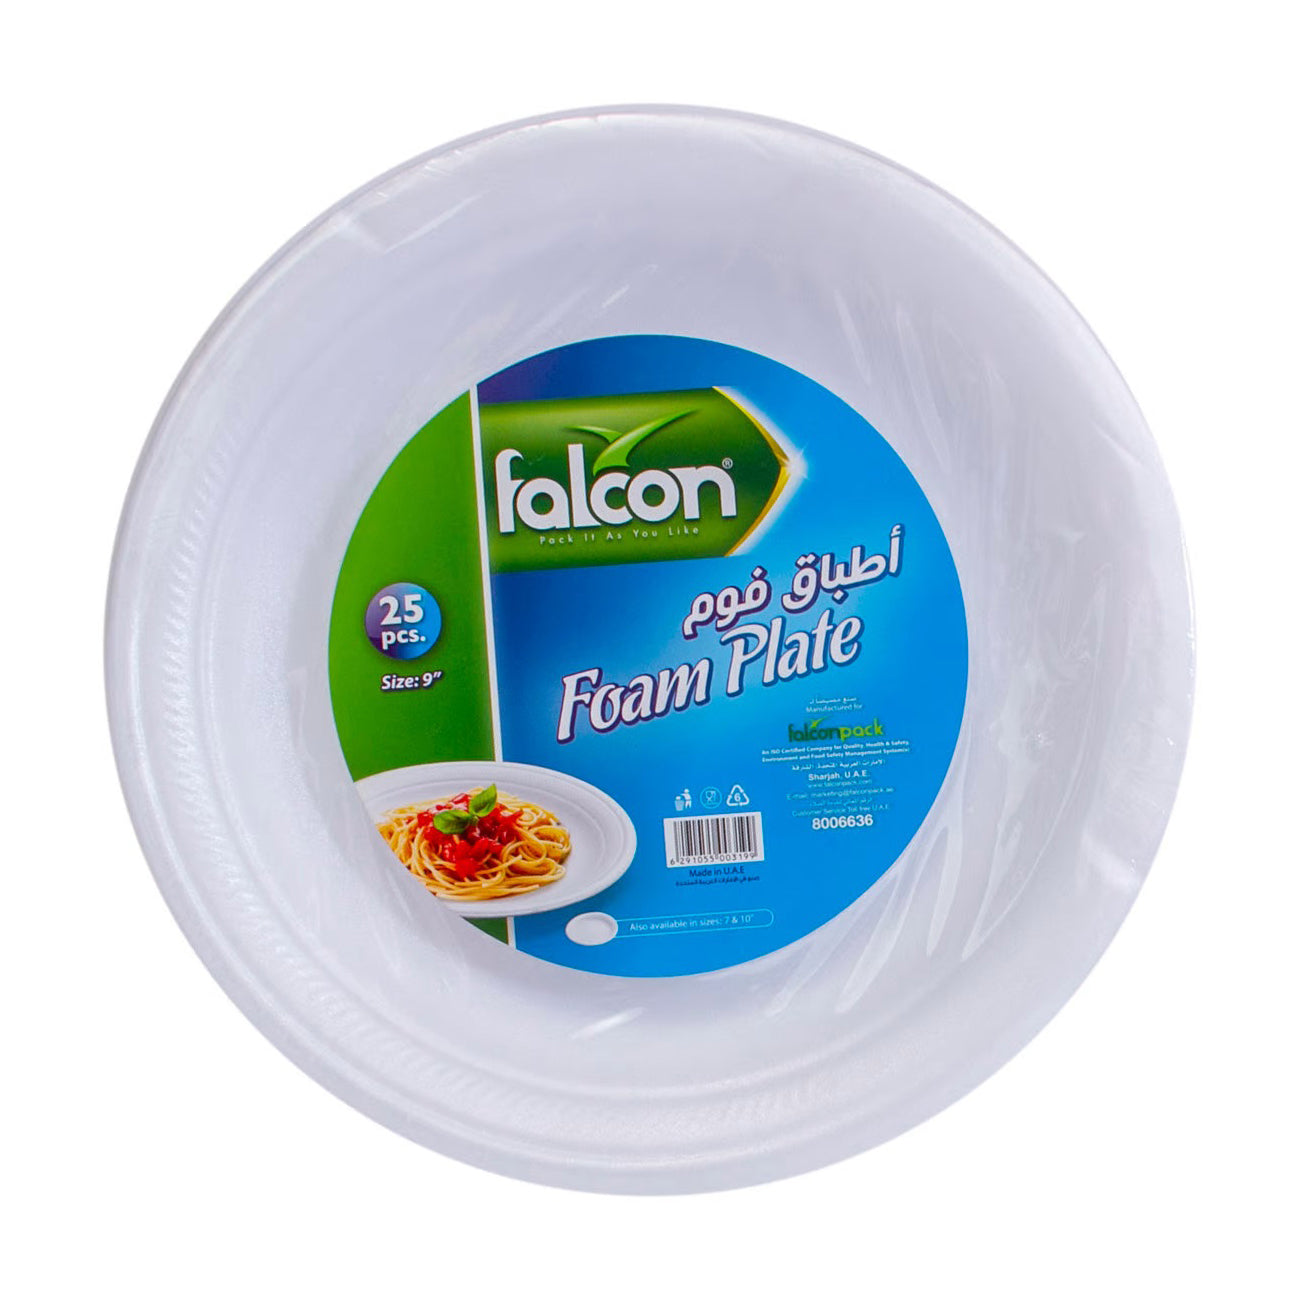 Falcon Foam Plate 9 Inch 25pcs